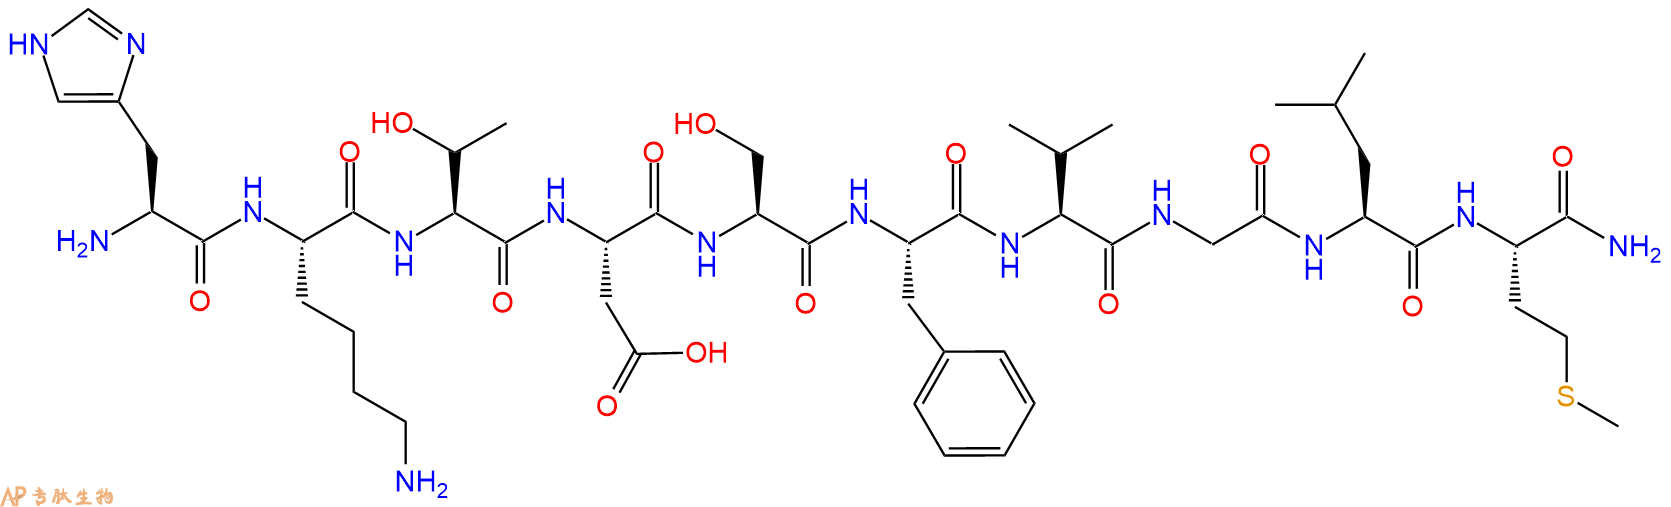 专肽生物产品神经激肽 A、NeurokininA/ Substance K86933-74-6